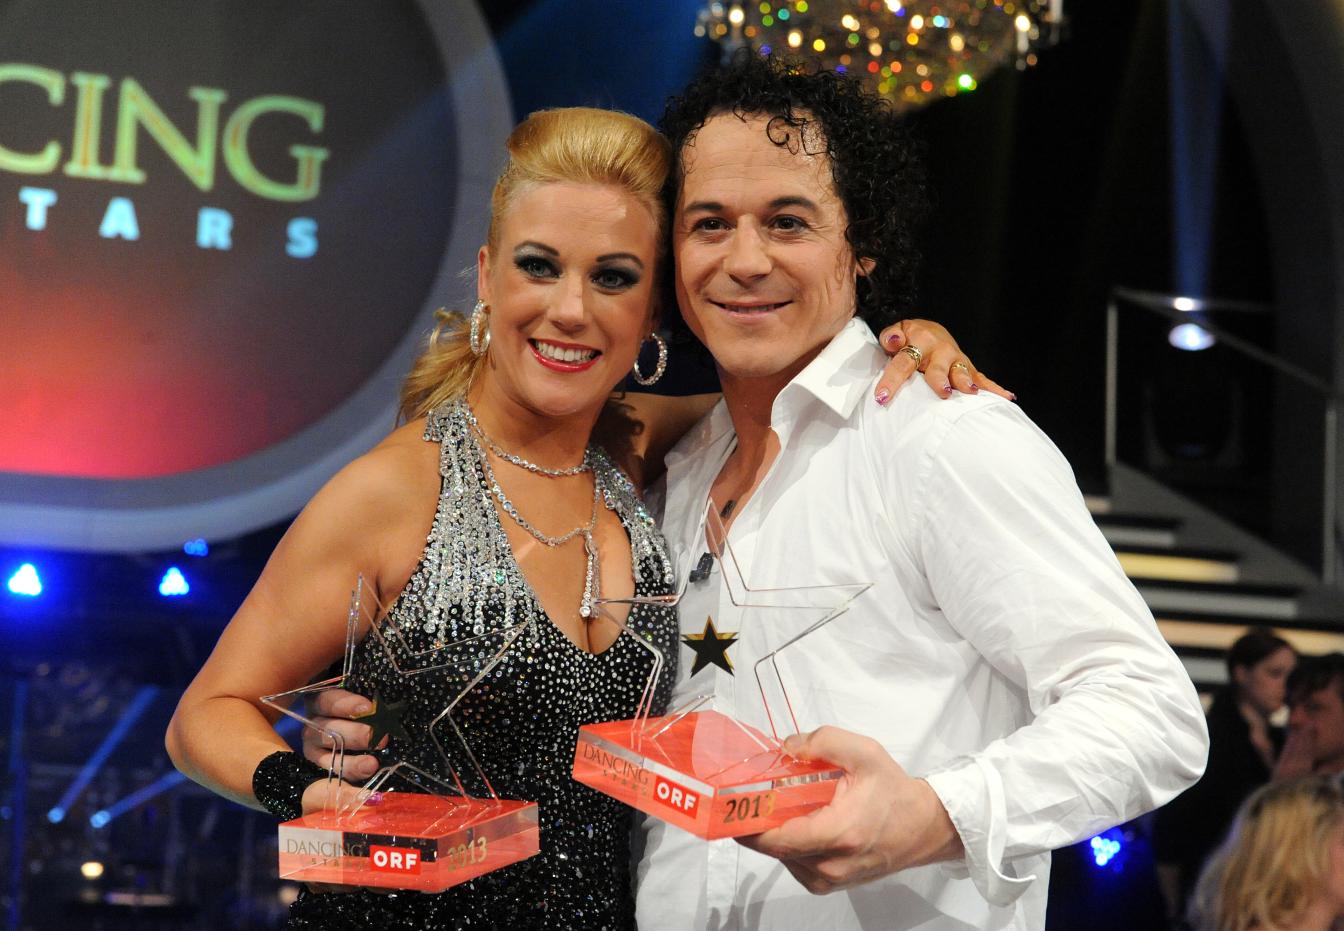 Manuela Stöckl mit Tanzpartner Rainer Schönfelder nach dem Finale von "Dancing Stars"